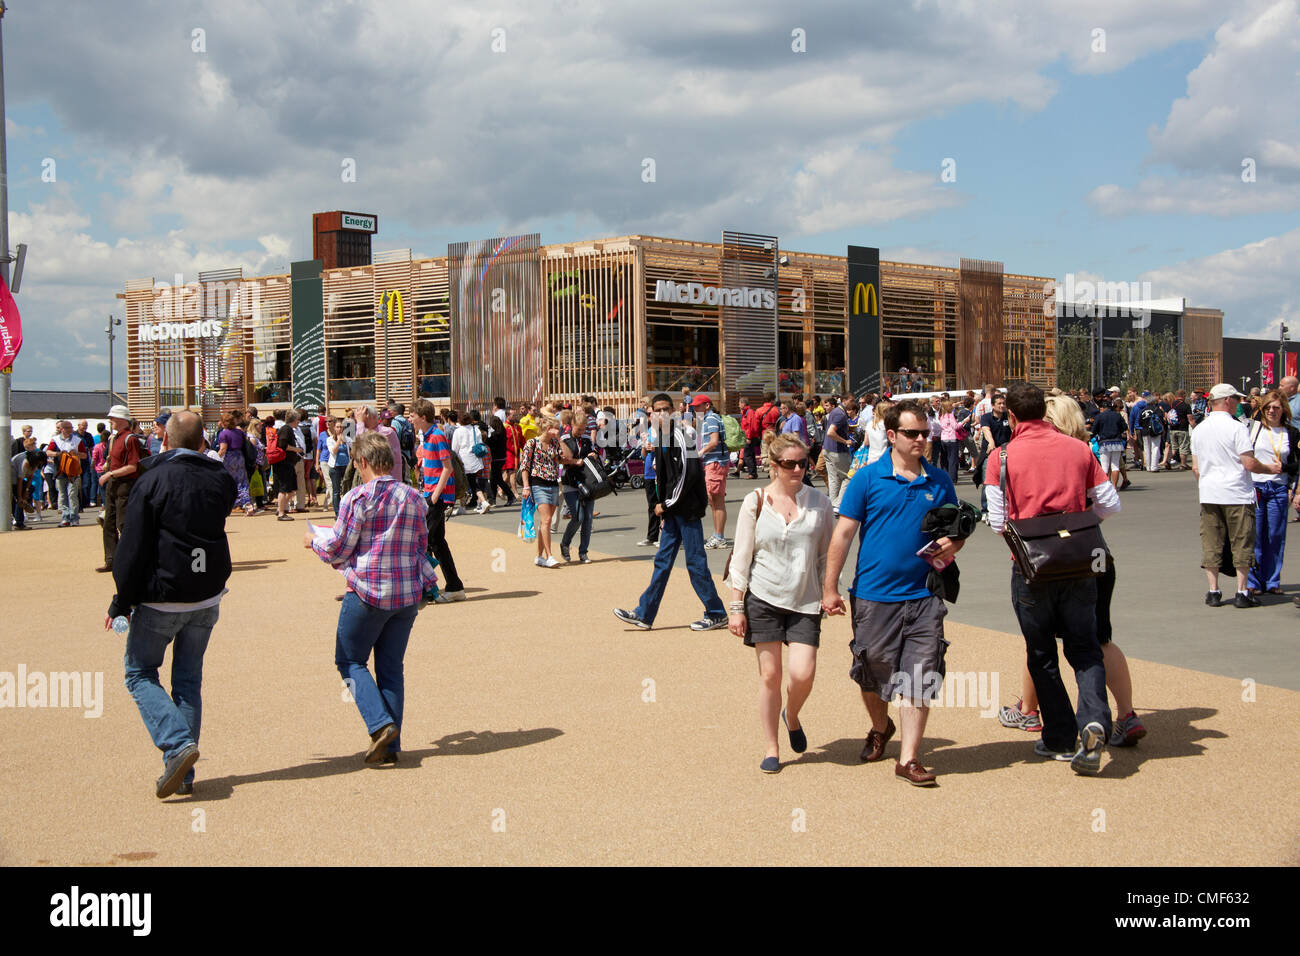 Les gens qui marchent devant un restaurant Macdonald lors d'une journée ensoleillée au parc olympique, site des Jeux Olympiques de 2012 à Londres, Stratford London E20, Royaume-Uni Banque D'Images